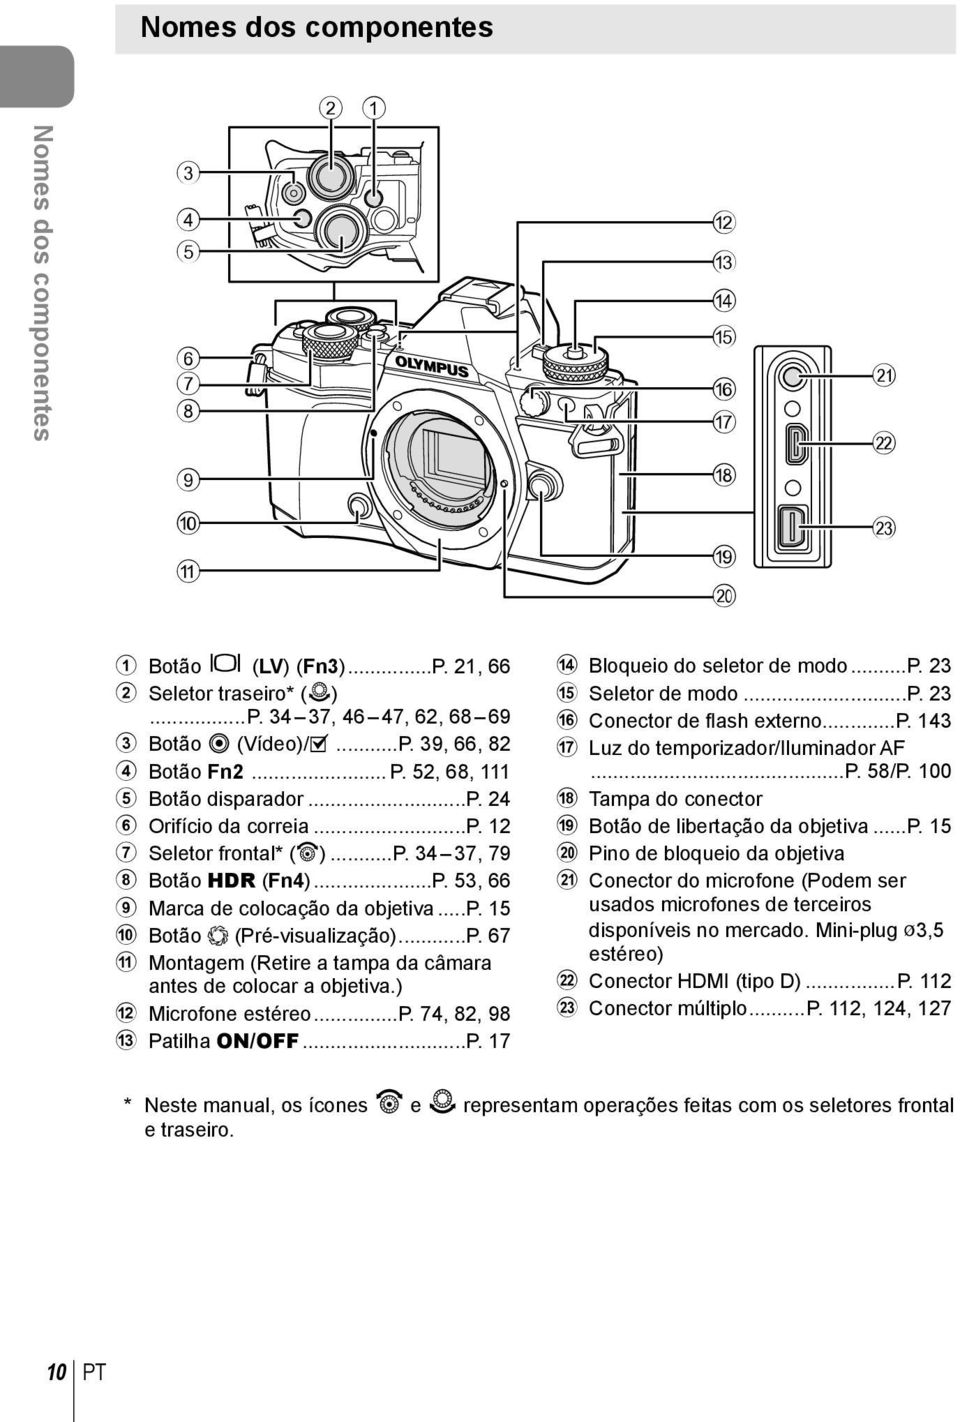 ..P. 67 a Montagem (Retire a tampa da câmara antes de colocar a objetiva.) b Microfone estéreo...p. 74, 8, 98 c Patilha ON/OFF...P. 17 d Bloqueio do seletor de modo...p. 3 e Seletor de modo...p. 3 f Conector de fl ash externo.